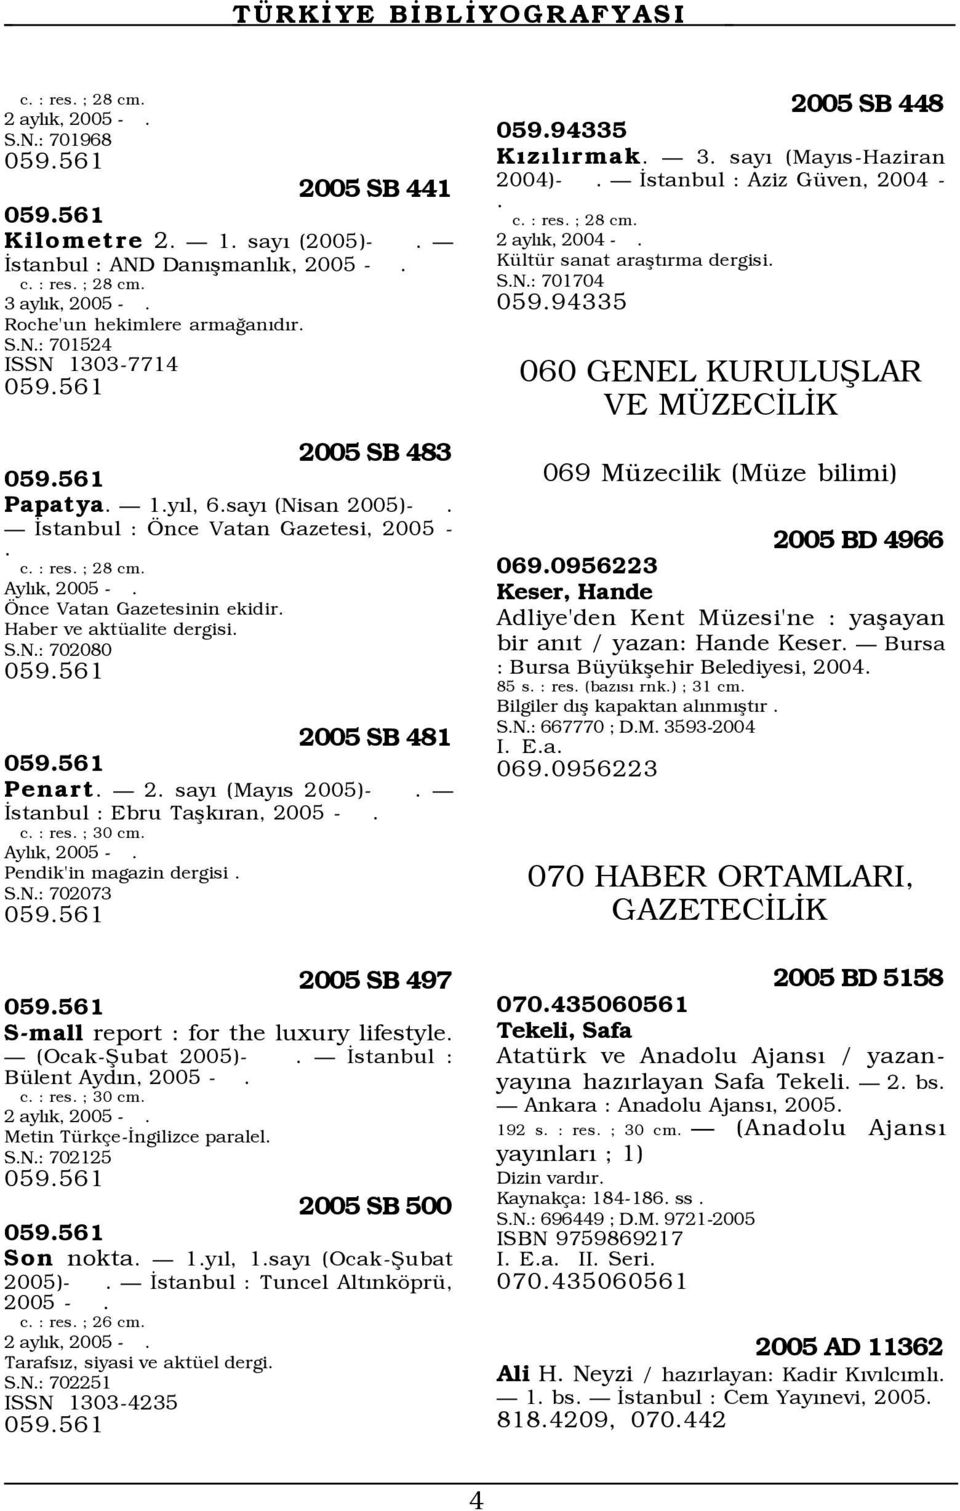 Önce Vatan Gazetesinin ekidir. Haber ve aktüalite dergisi. S.N.: 702080 059.561 2005 SB 481 059.561 Penart. 2. sayı (Mayıs 2005)-. İstanbul : Ebru Taşkıran, 2005 -. c. : res. ; 30 cm. Aylık, 2005 -.